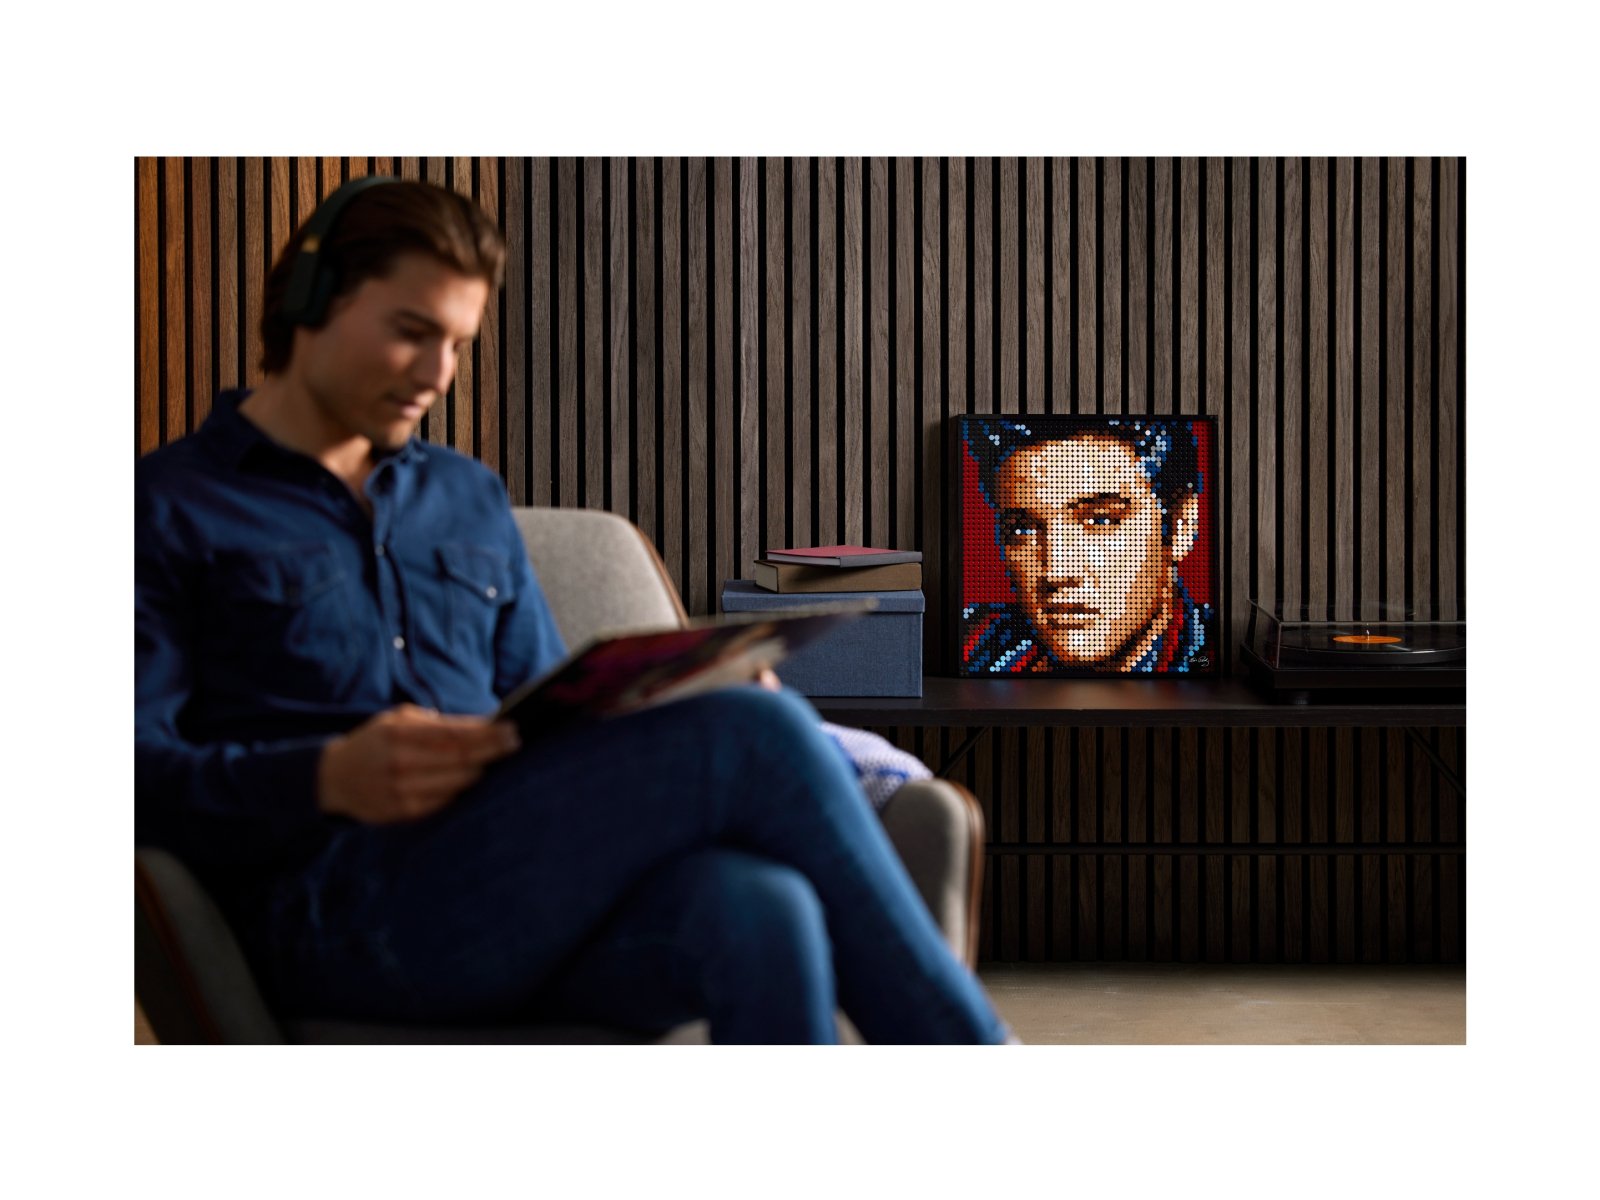 LEGO 31204 Art Elvis Presley „Król”